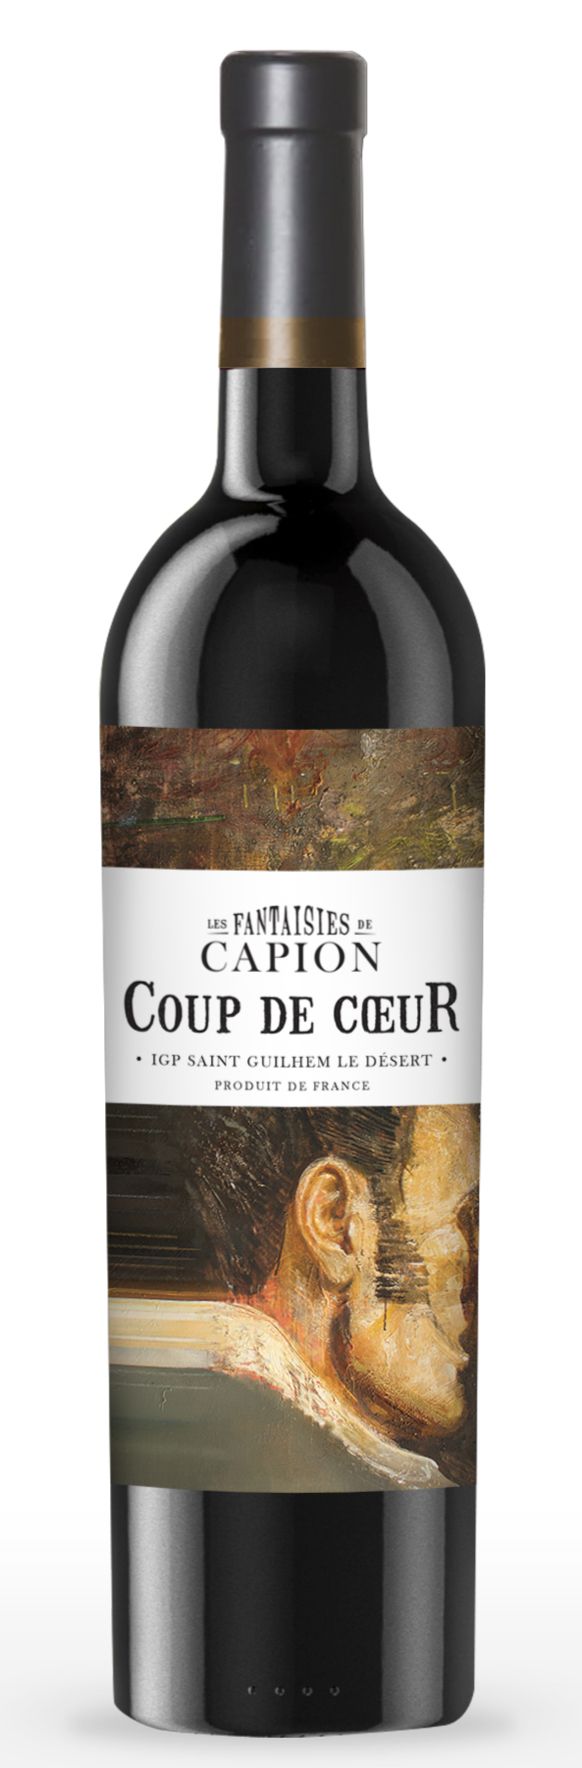 Château Capion LES FANTAISIES DE CAPION, Tinto, 2016, Saint-Guilhem-le-Désert. Bottle image